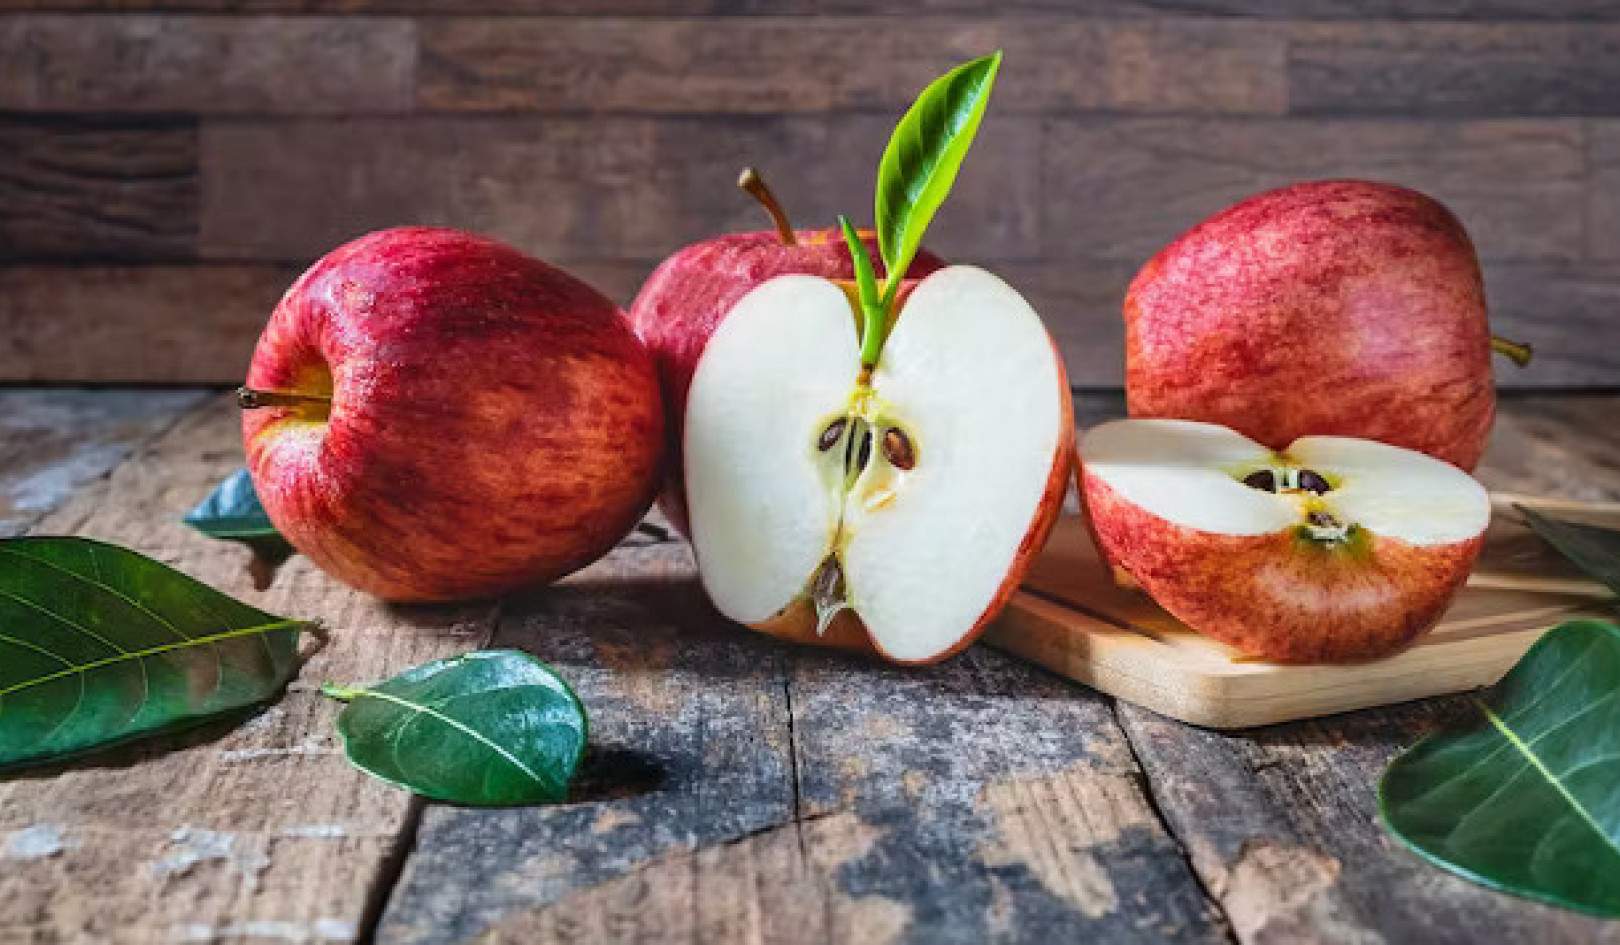 האם תפוח ביום באמת מרחיק את הרופא?